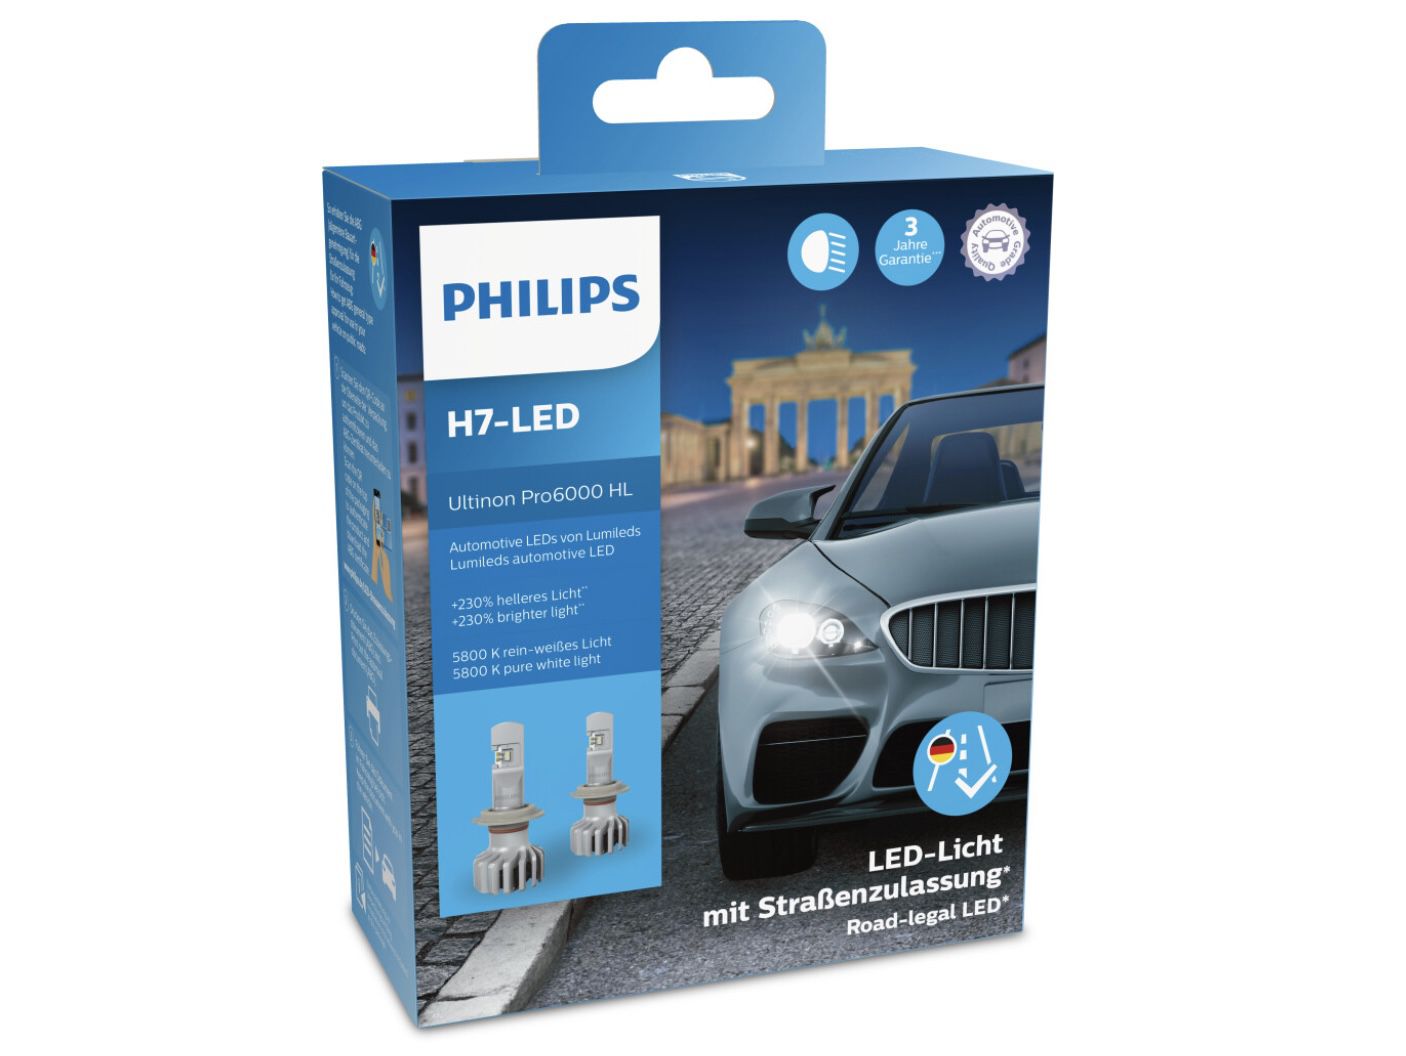 Philips Ultinon Pro6000 H7 LED Scheinwerferlampe für 83,30€ (statt 90€)